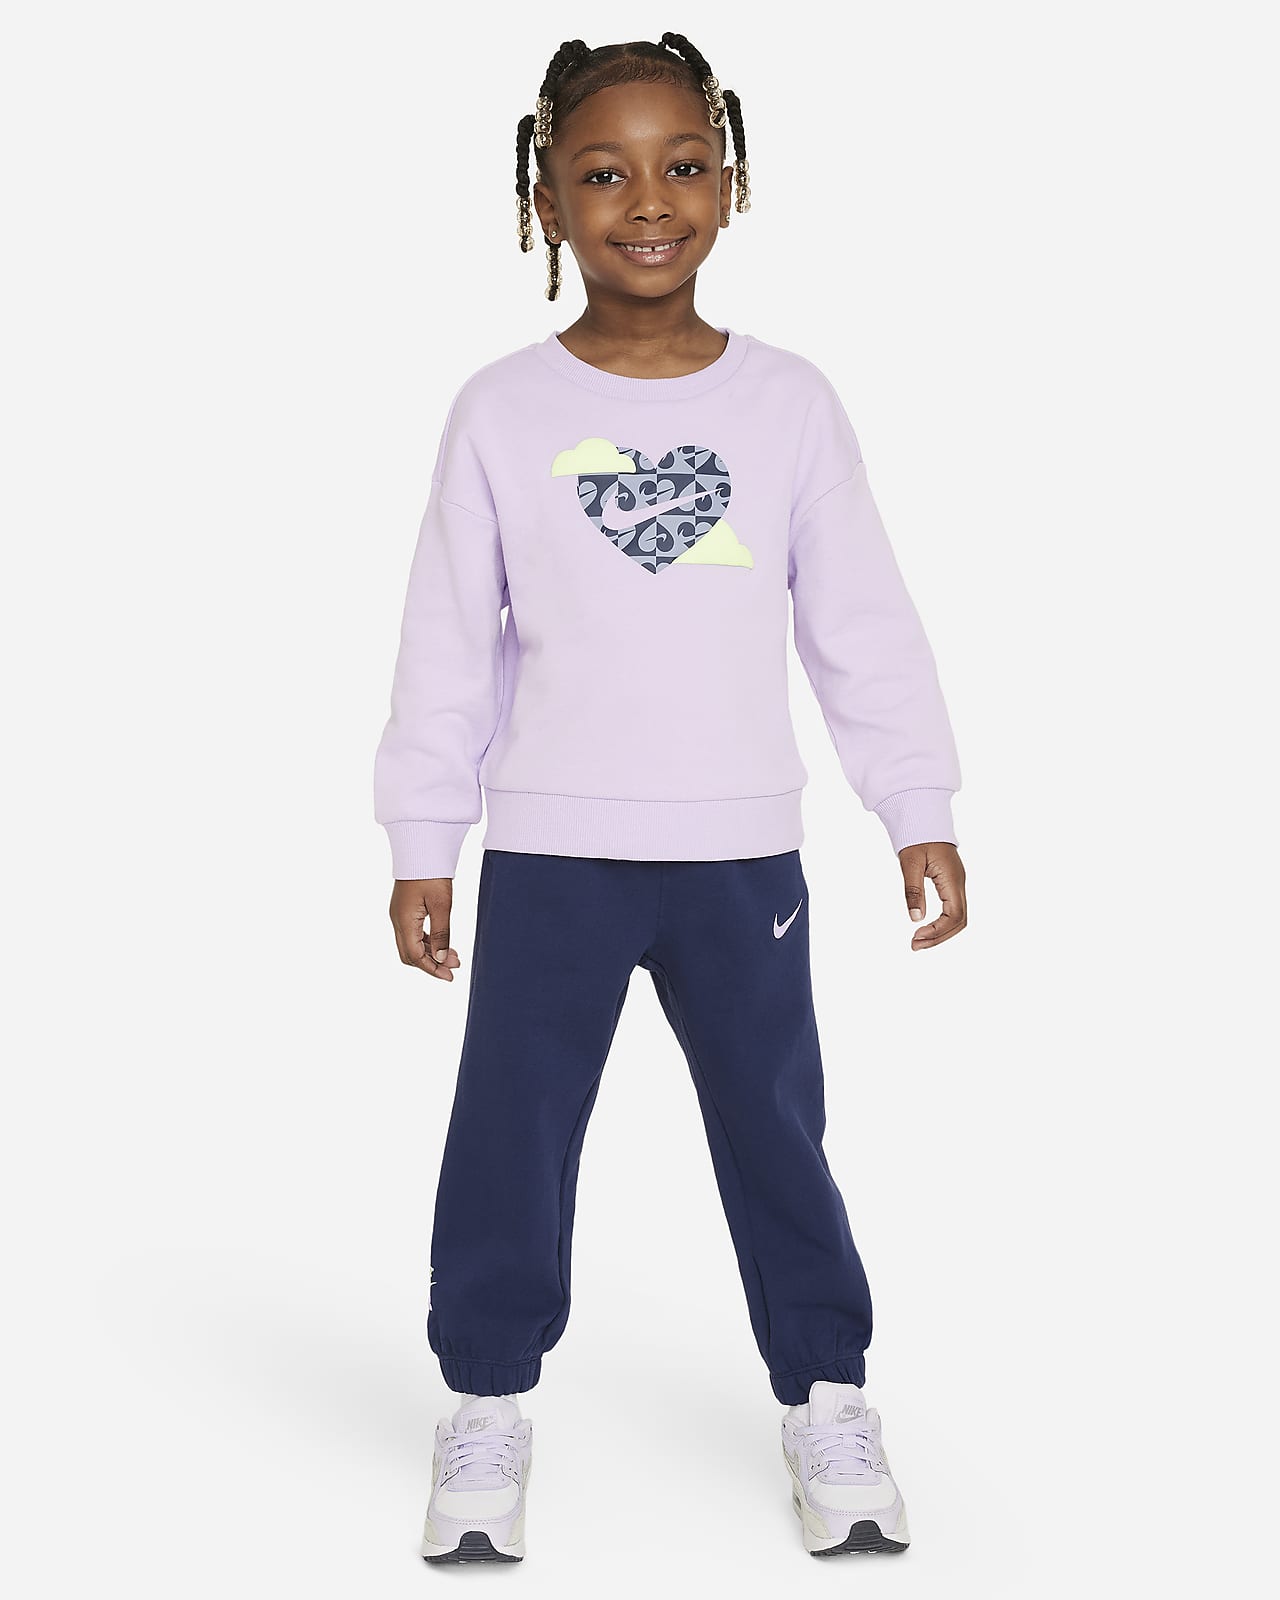 Nike Sweet Swoosh 婴童圆领上衣和长裤套装